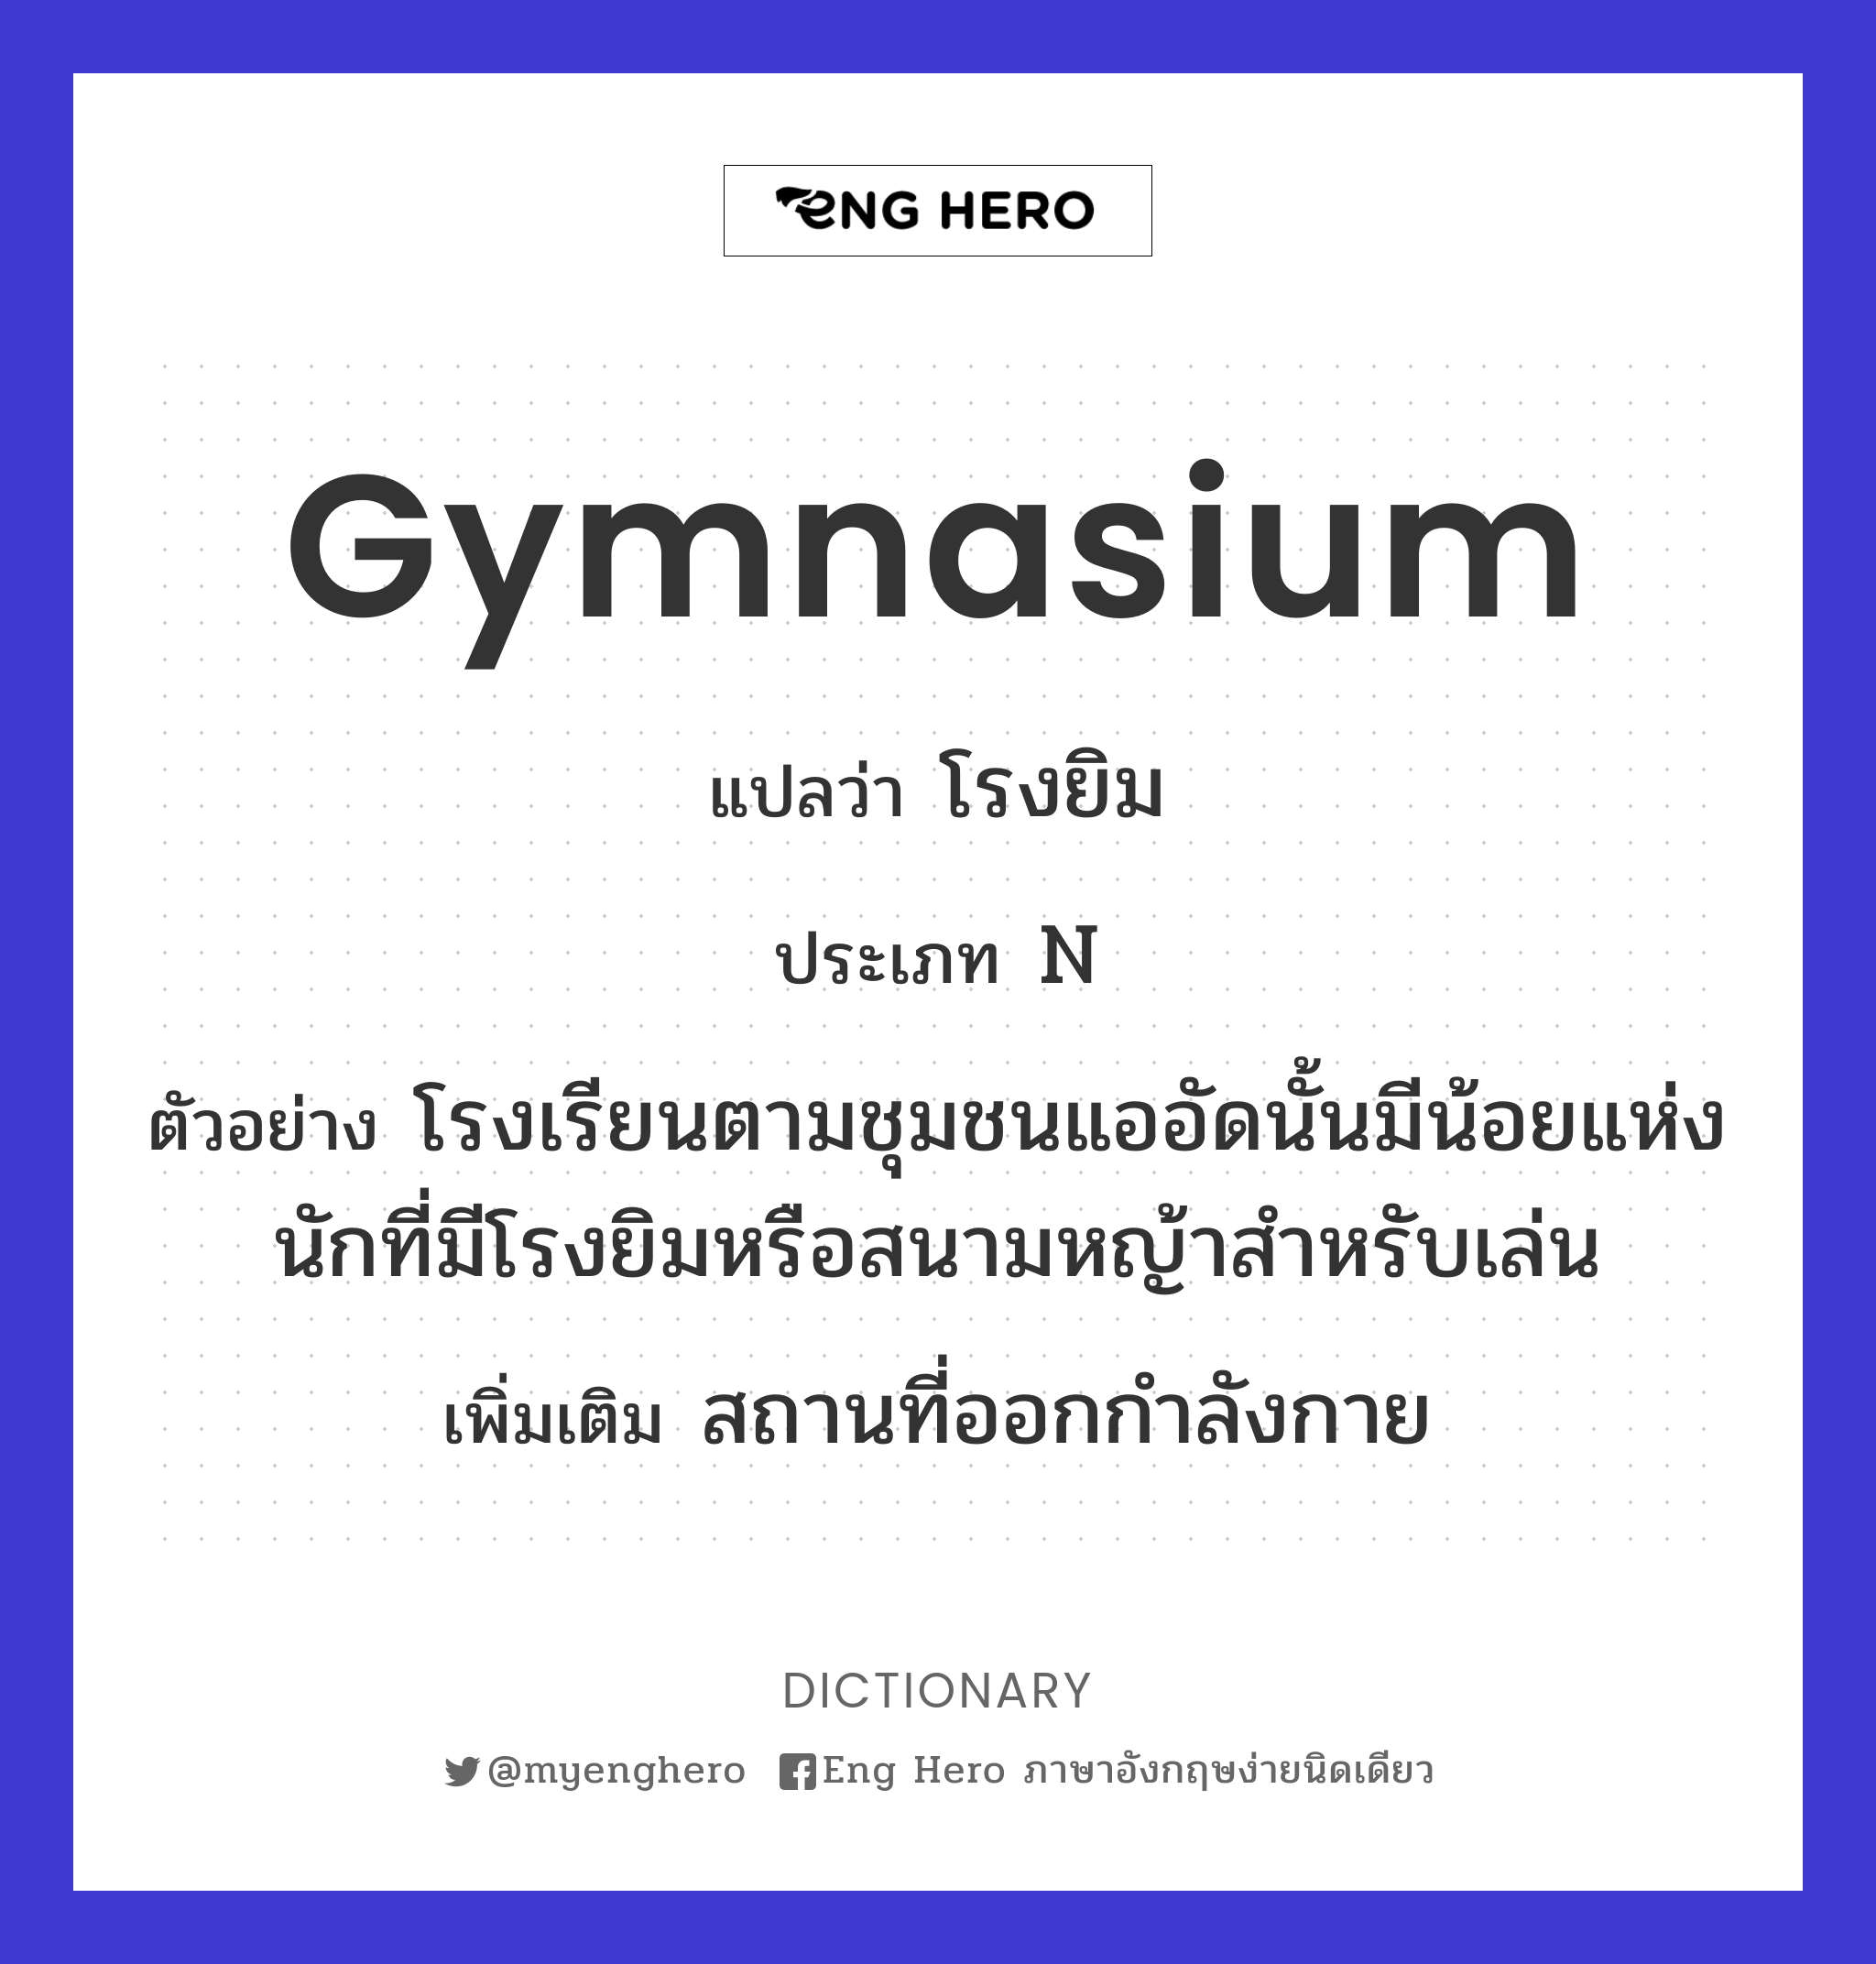 Gymnasium แปลว่า โรงพลศึกษา, โรงกีฬา, โรงกายกรรม | Eng Hero เรียนภาษาอังกฤษ  ออนไลน์ ฟรี